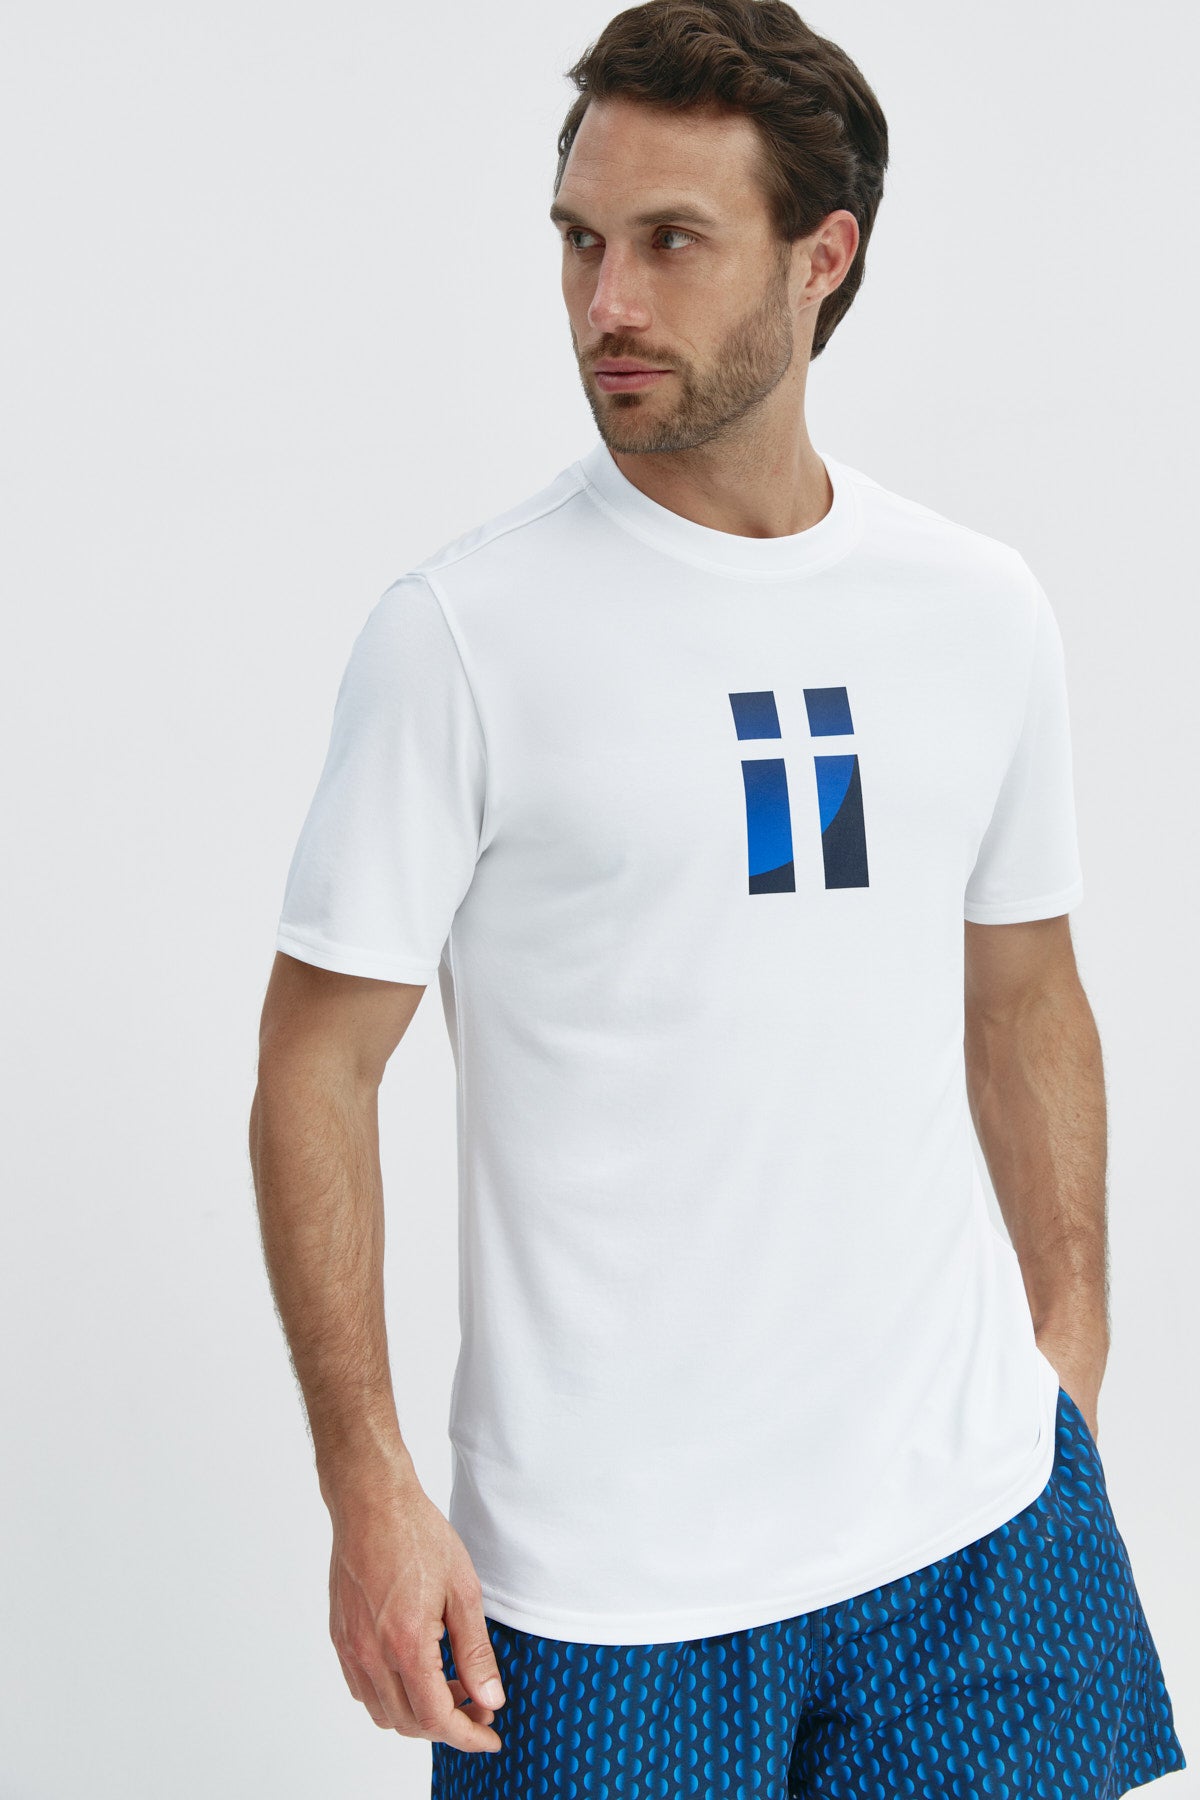 Camiseta básica de hombre blanca con logo estampado de aleta de manga corta, antiarrugas y antimanchas. Foto frente